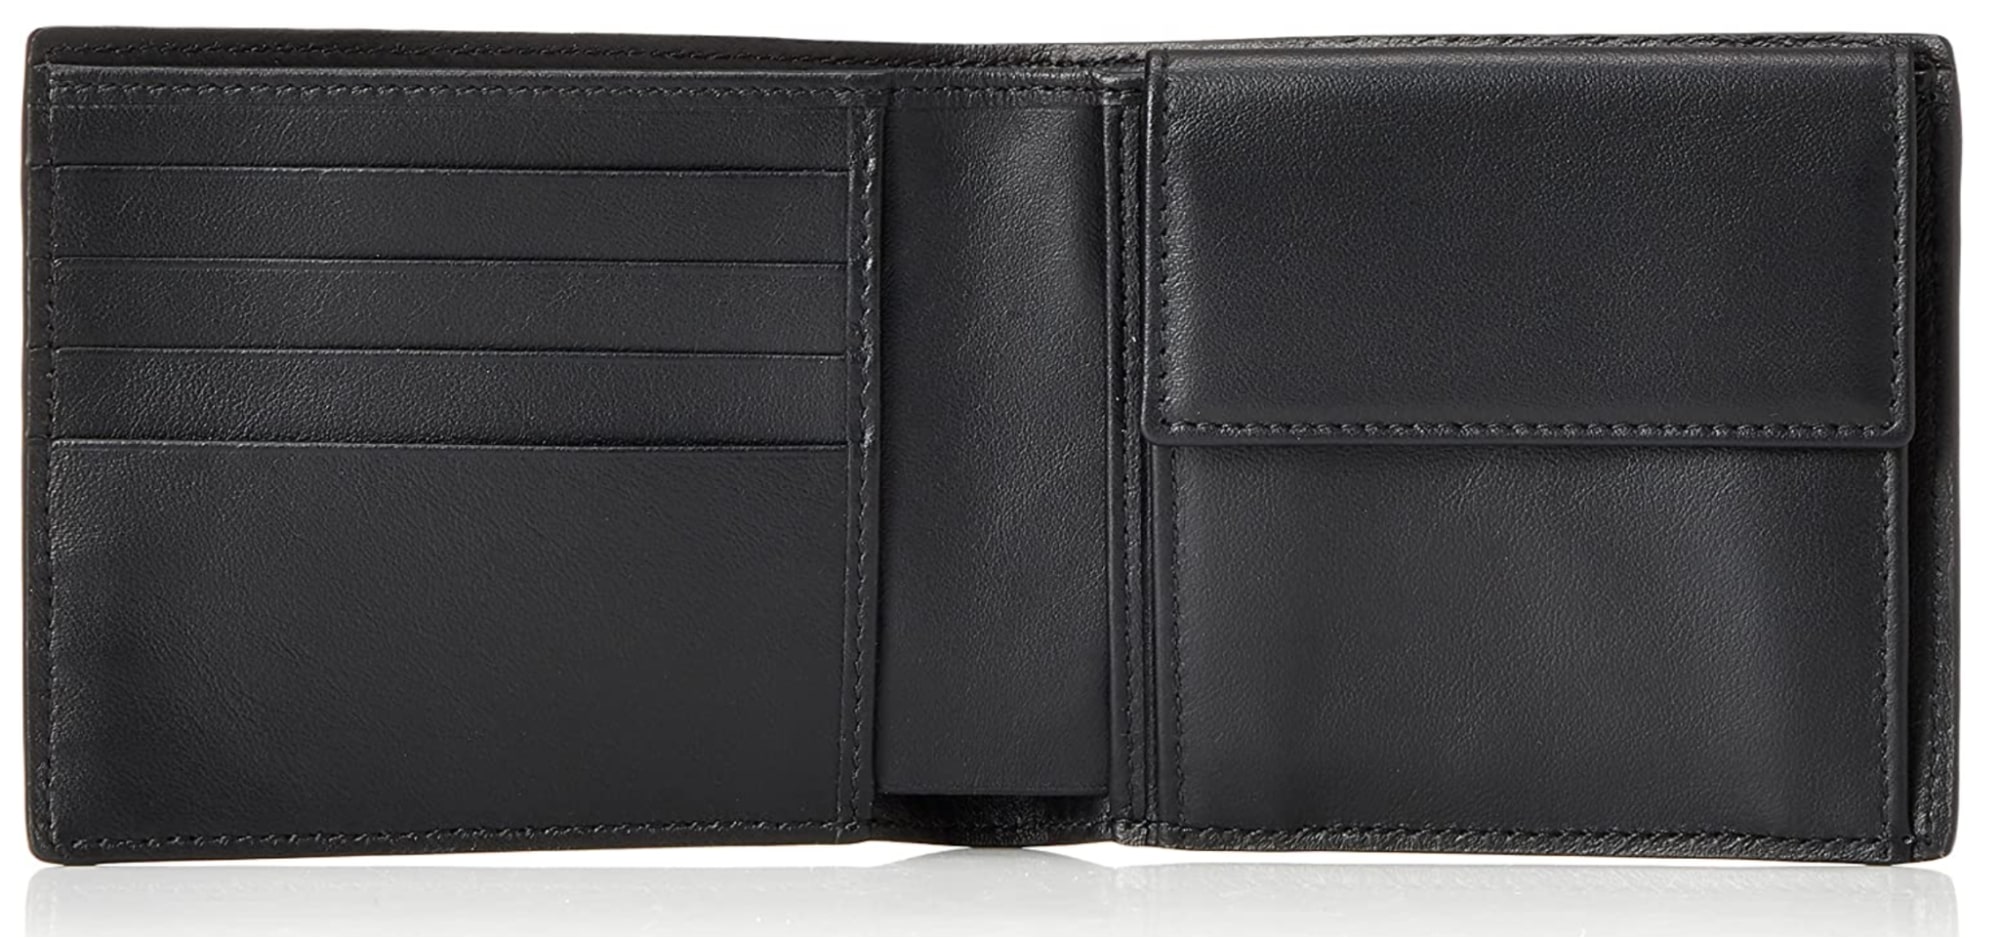 スマイソンのPanama コインケースウォレット二つ折り財布の内装
